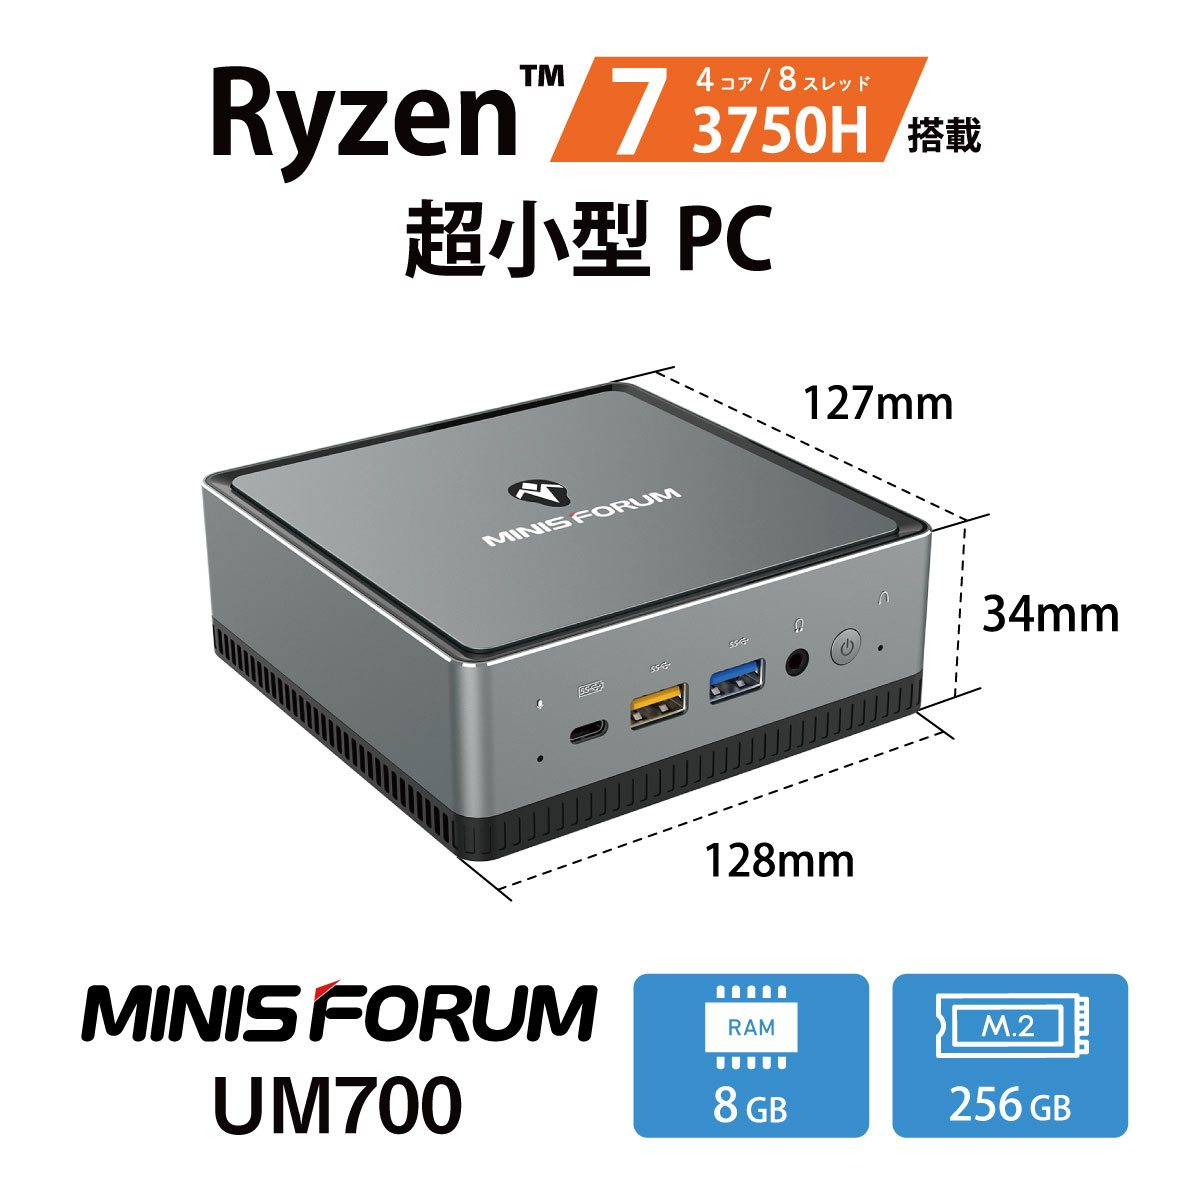 MINISFORUM UM700 デスクトップPC